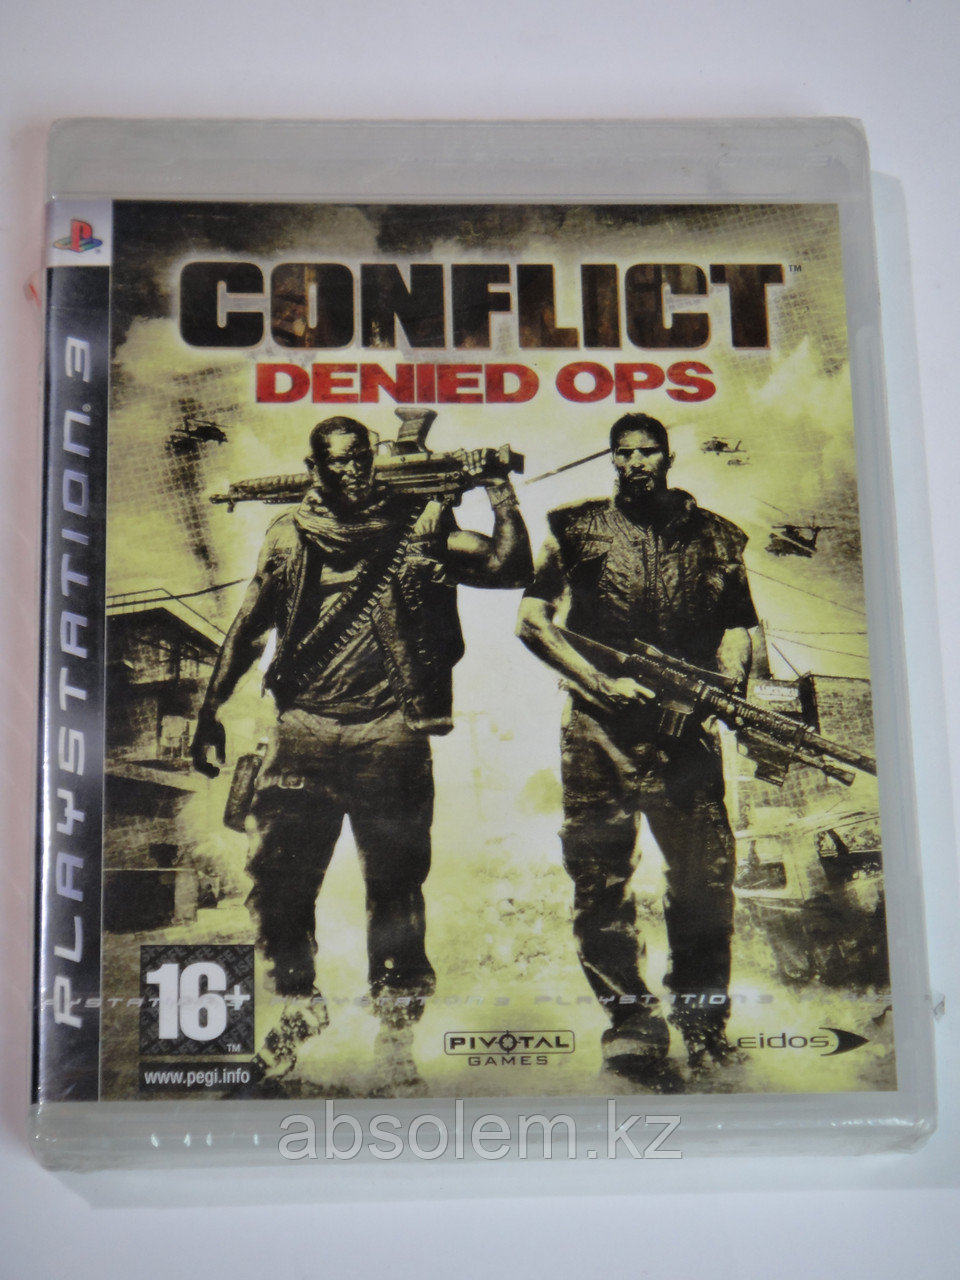 Игра для PS3 Conflict denied OPS (вскрытый)